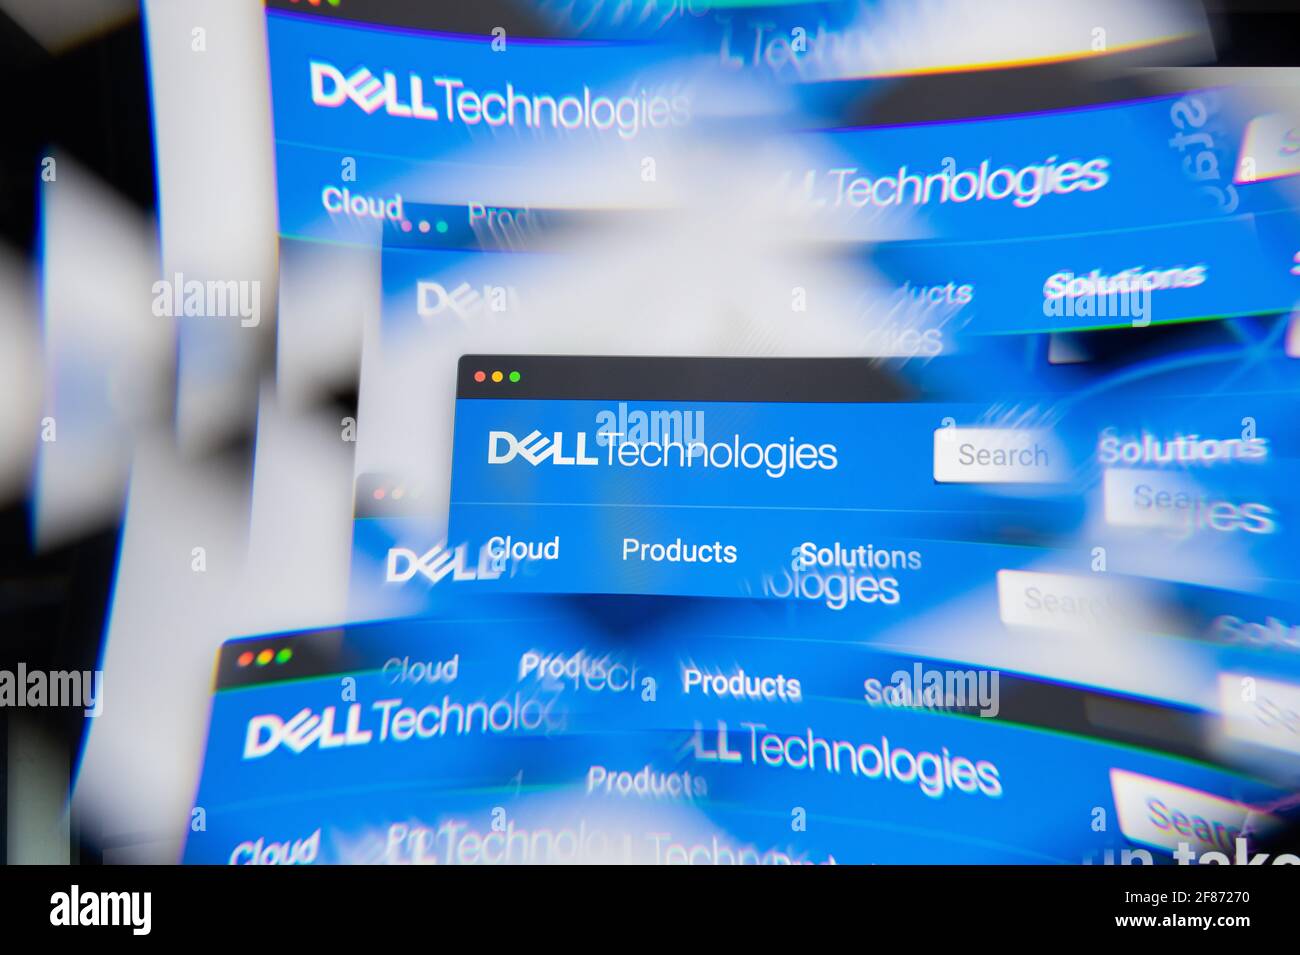 Mailand, Italien – 10. APRIL 2021: Dell Technologies-Logo auf dem Laptop-Bildschirm, das durch ein optisches Prisma gesehen wird. Illustratives redaktionelles Bild von Dell Technolog Stockfoto